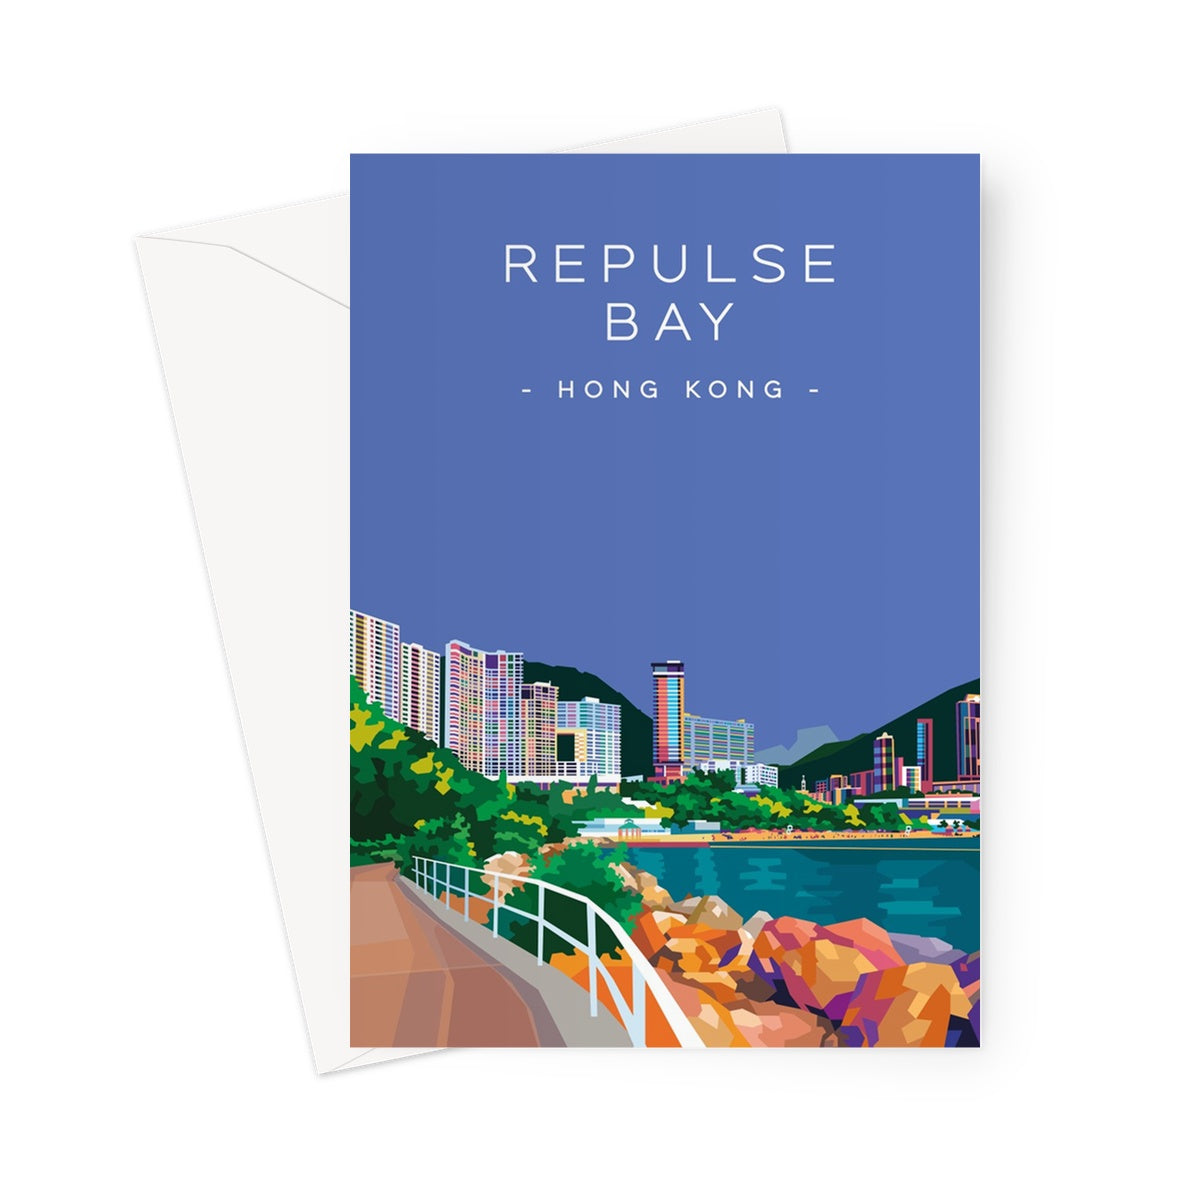 Hong Kong Travel - Repulse Bay Greeting Card